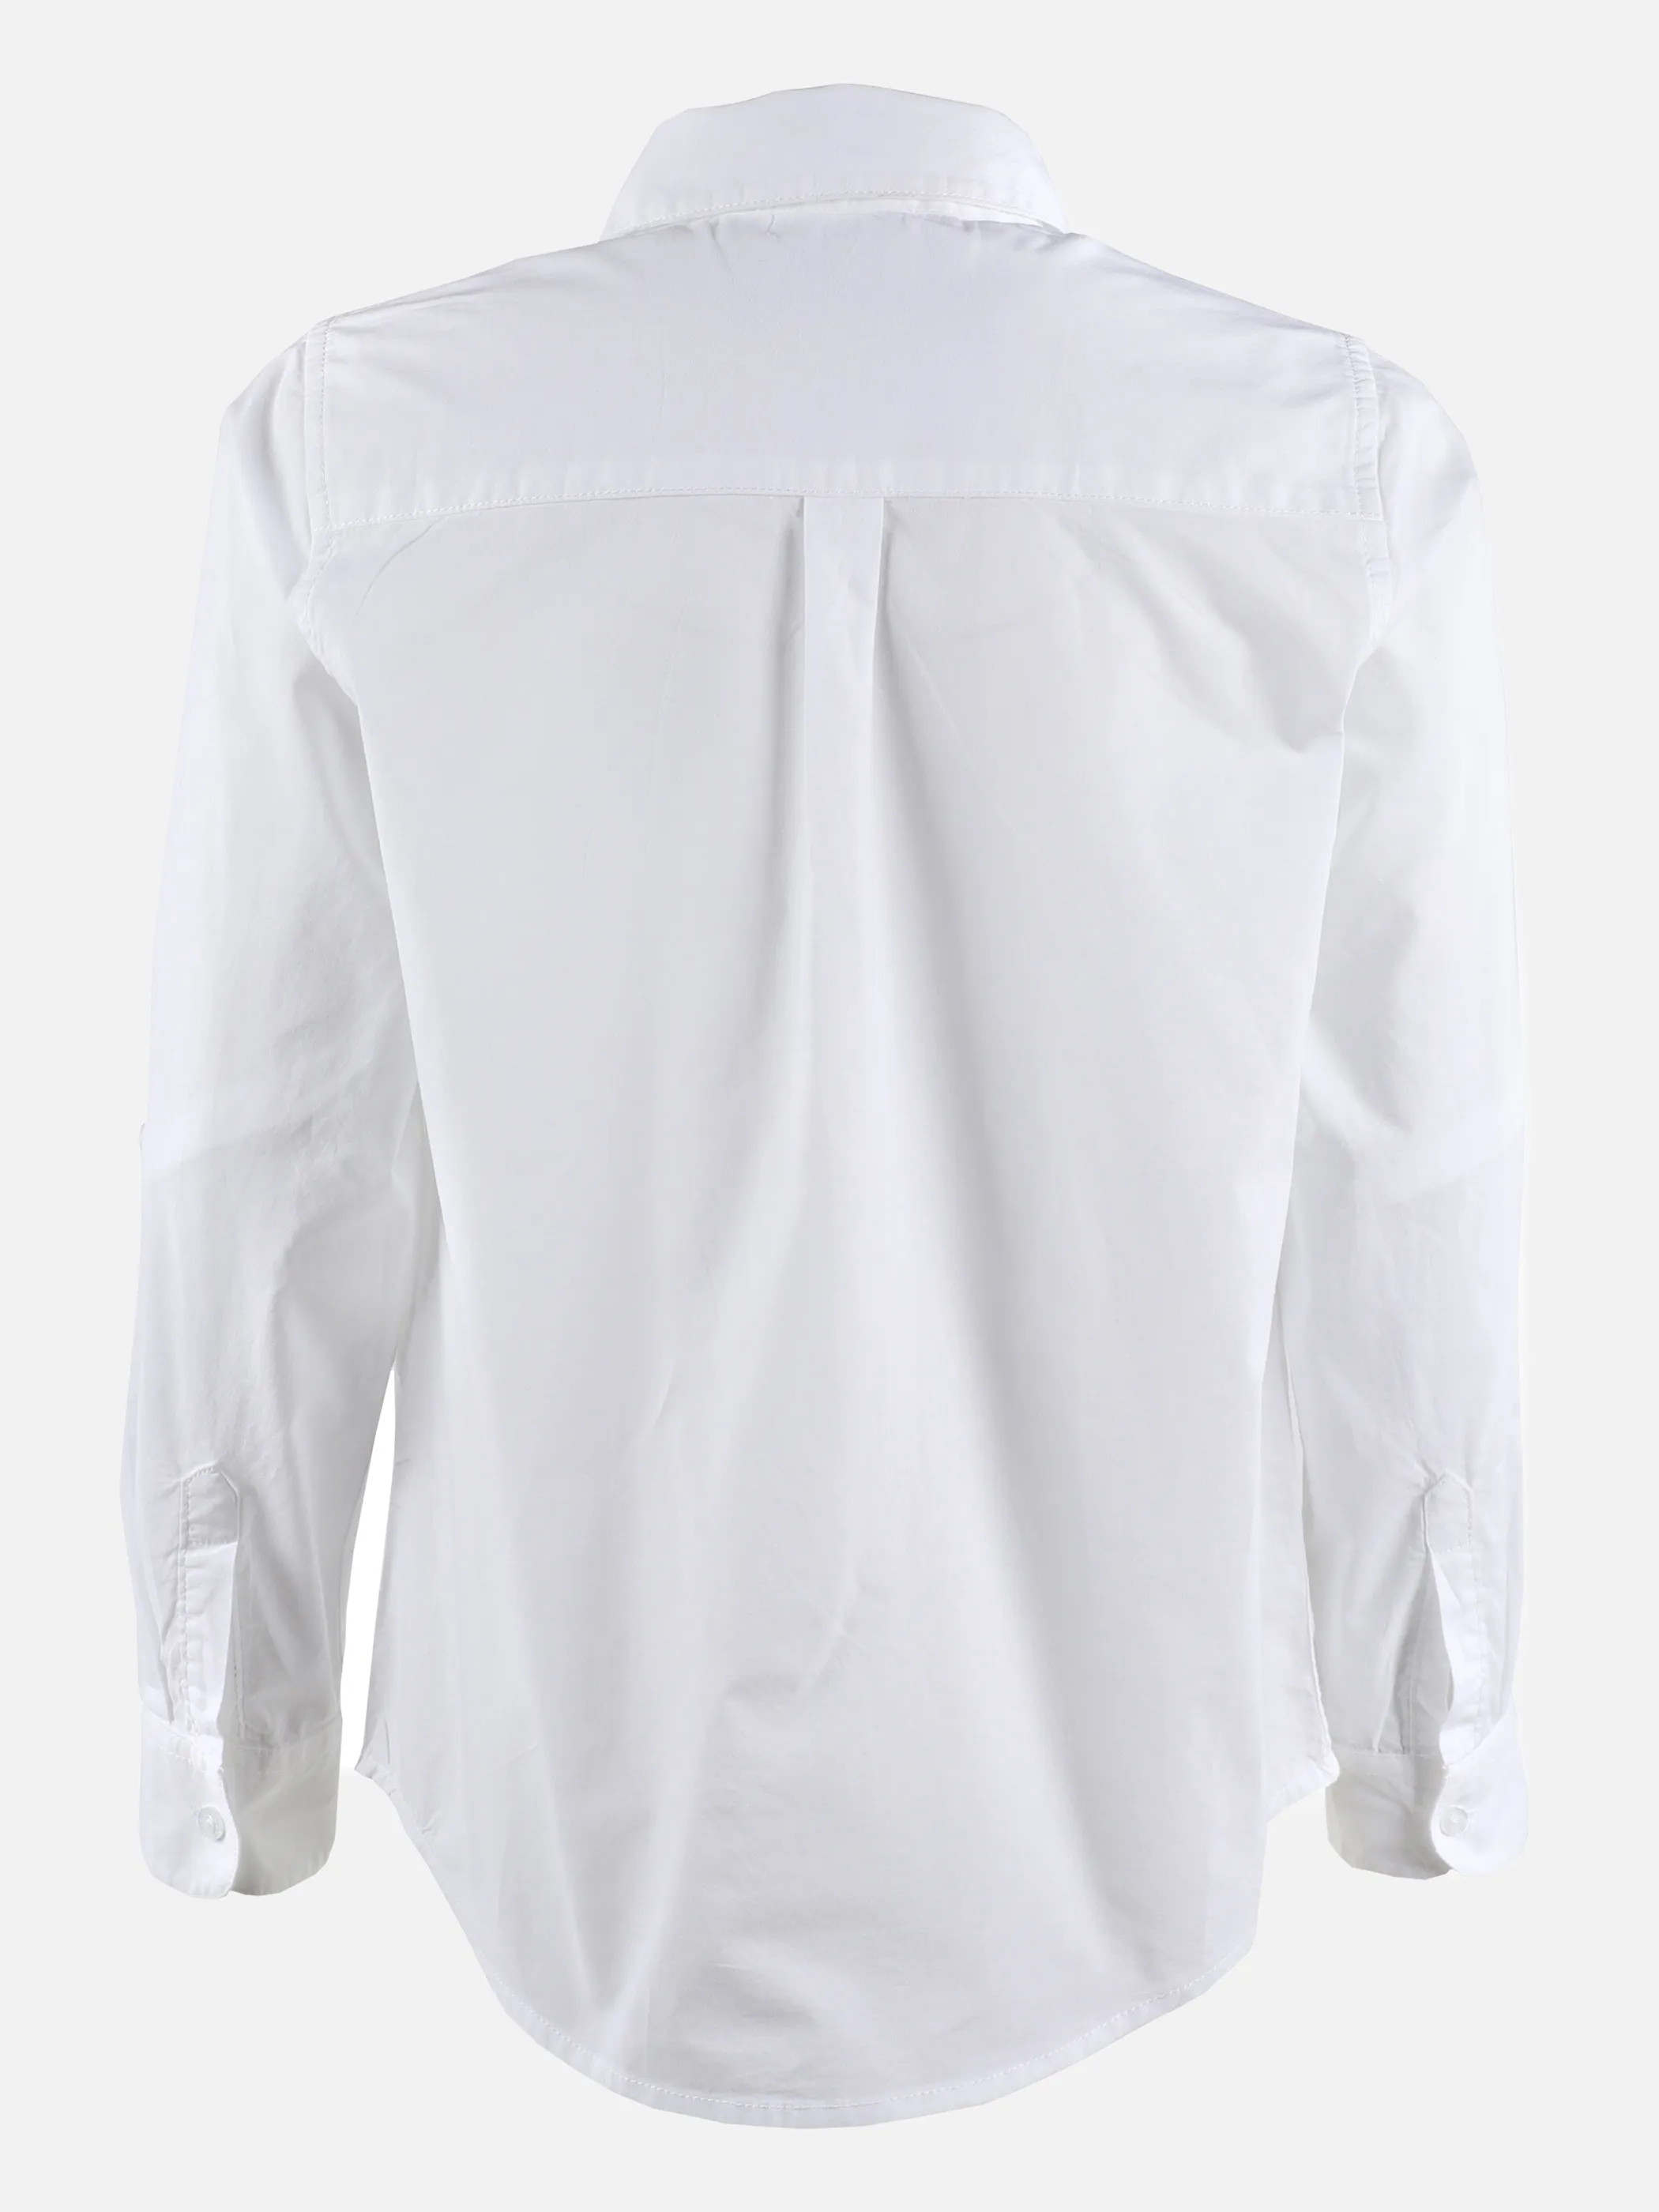 Stop + Go JJ Longsleeve Hemd in weiß mit Stickerei Weiß 875620 WEIß 2